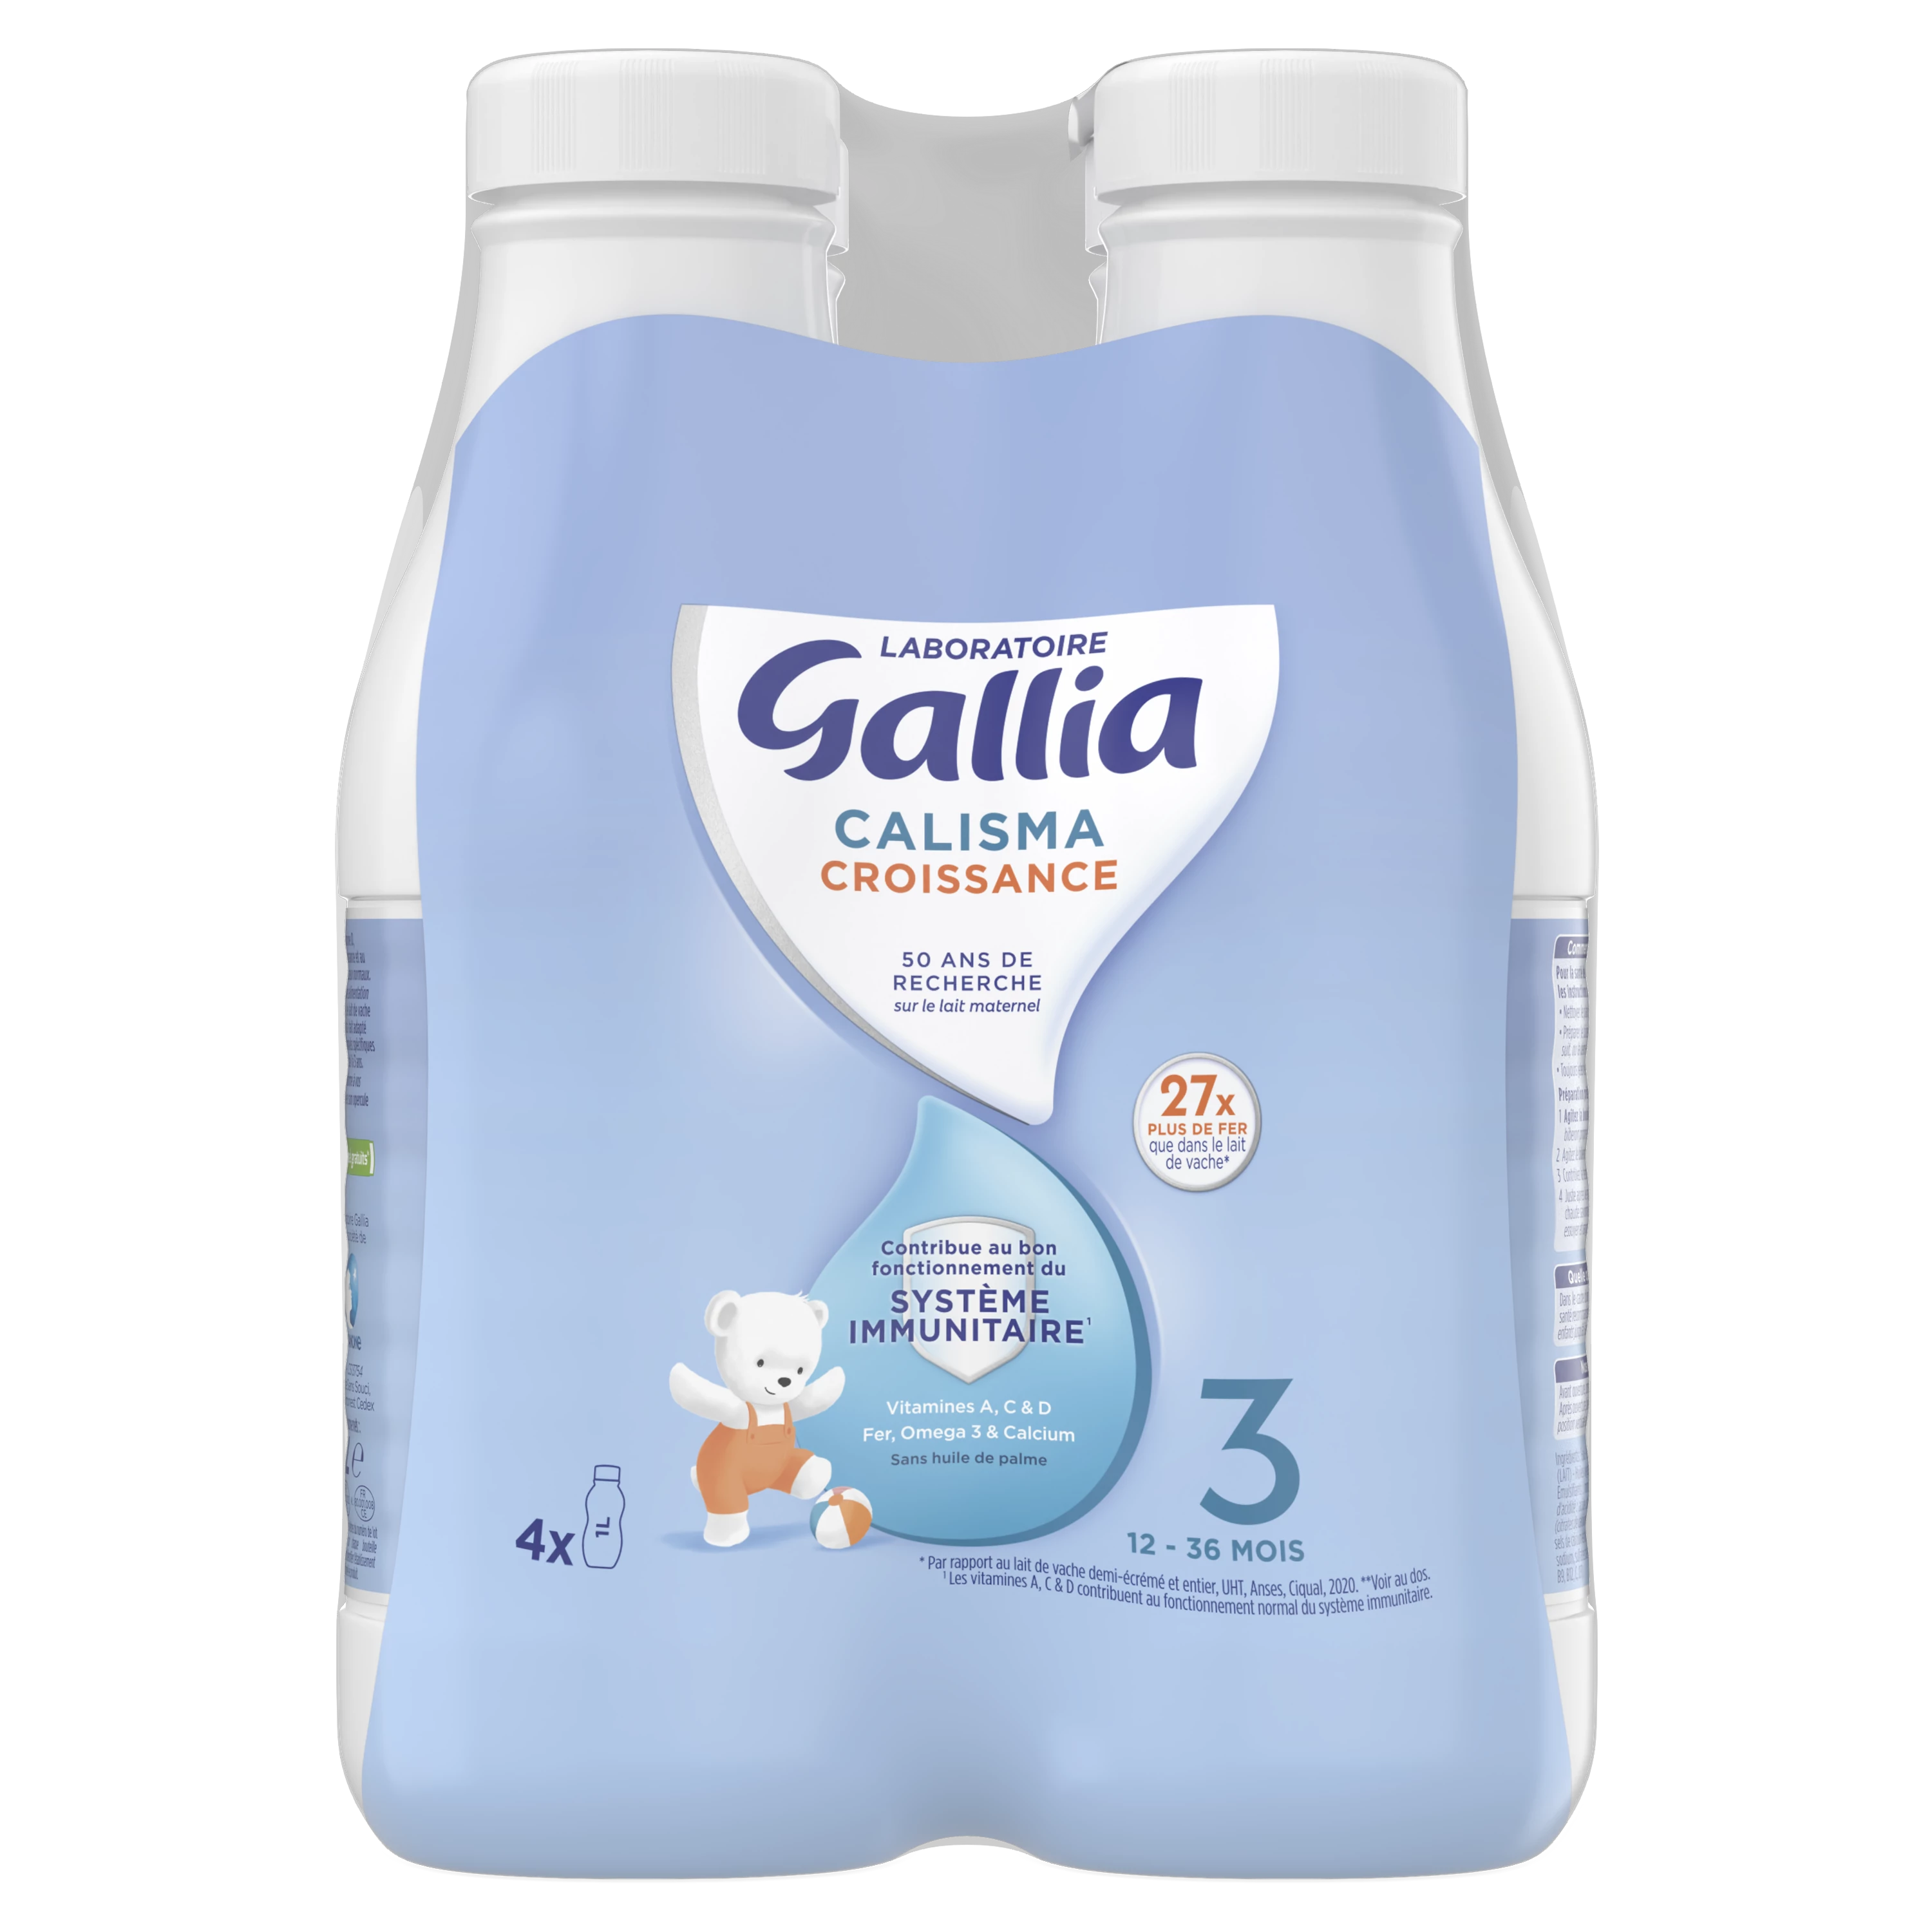 カリスマ成長液体ミルク 4x1L - GALLIA